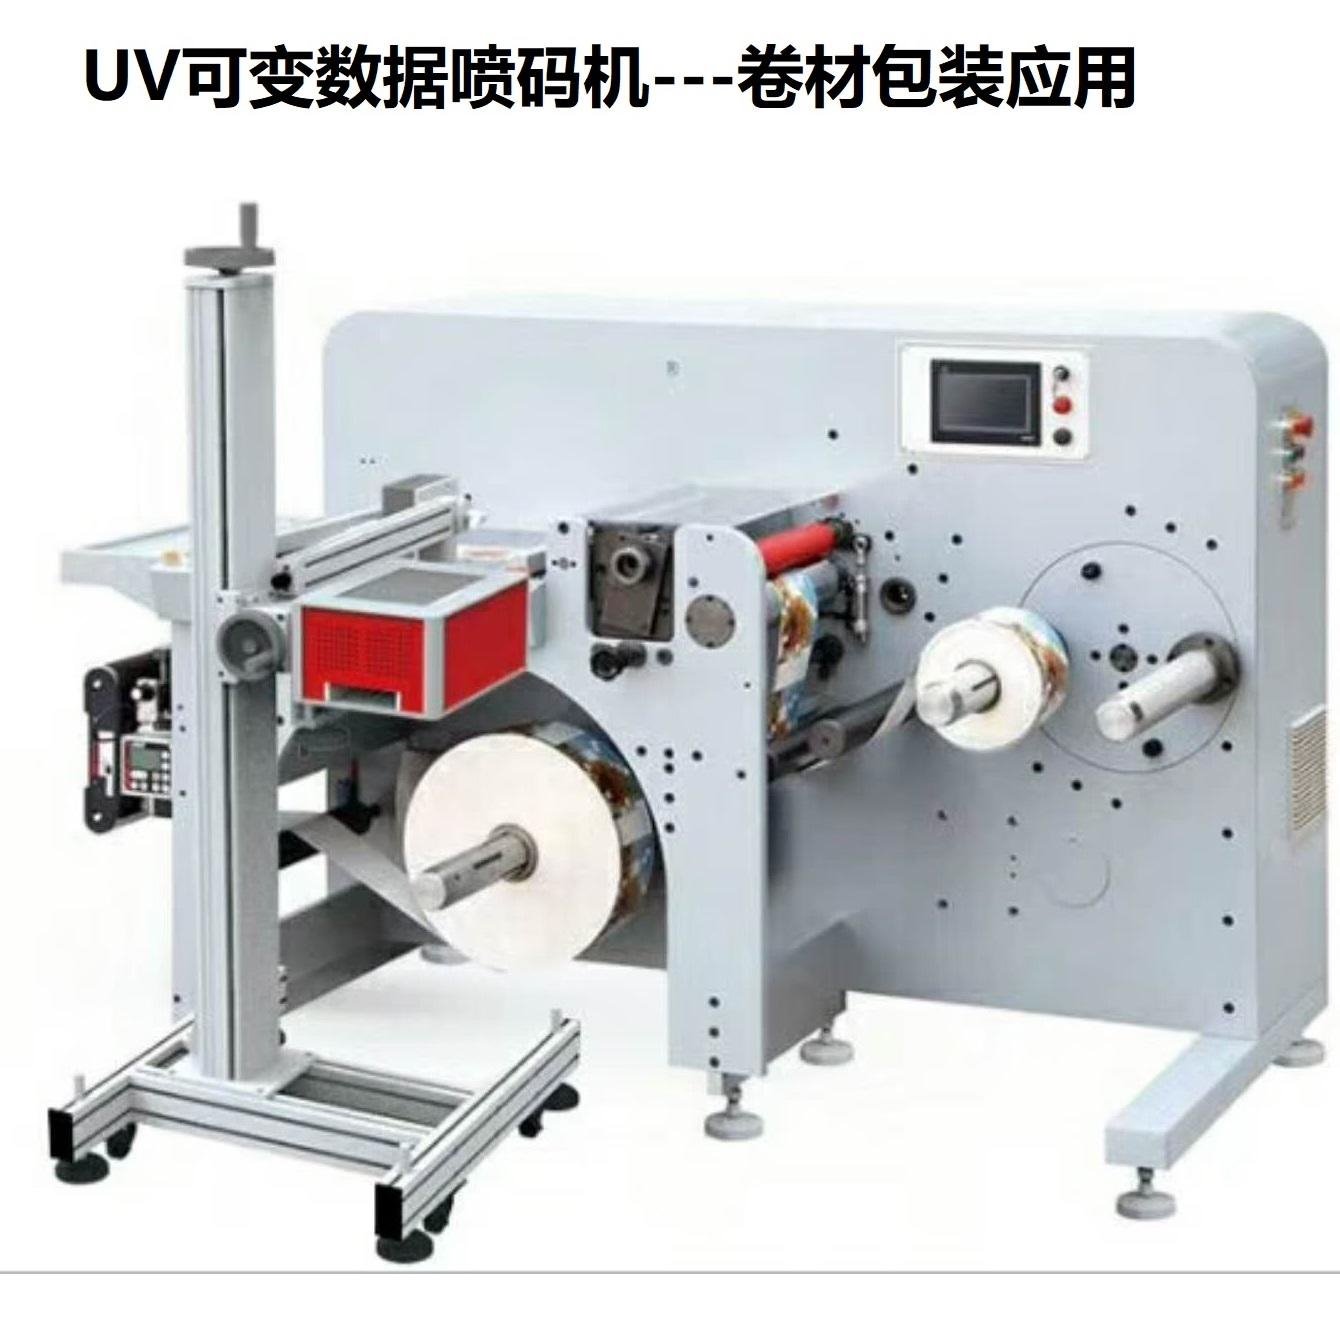 纸箱条码印刷机 彩色二维码印刷机 UV喷码机 可变数据喷码机 金博锐uv32喷码机图片